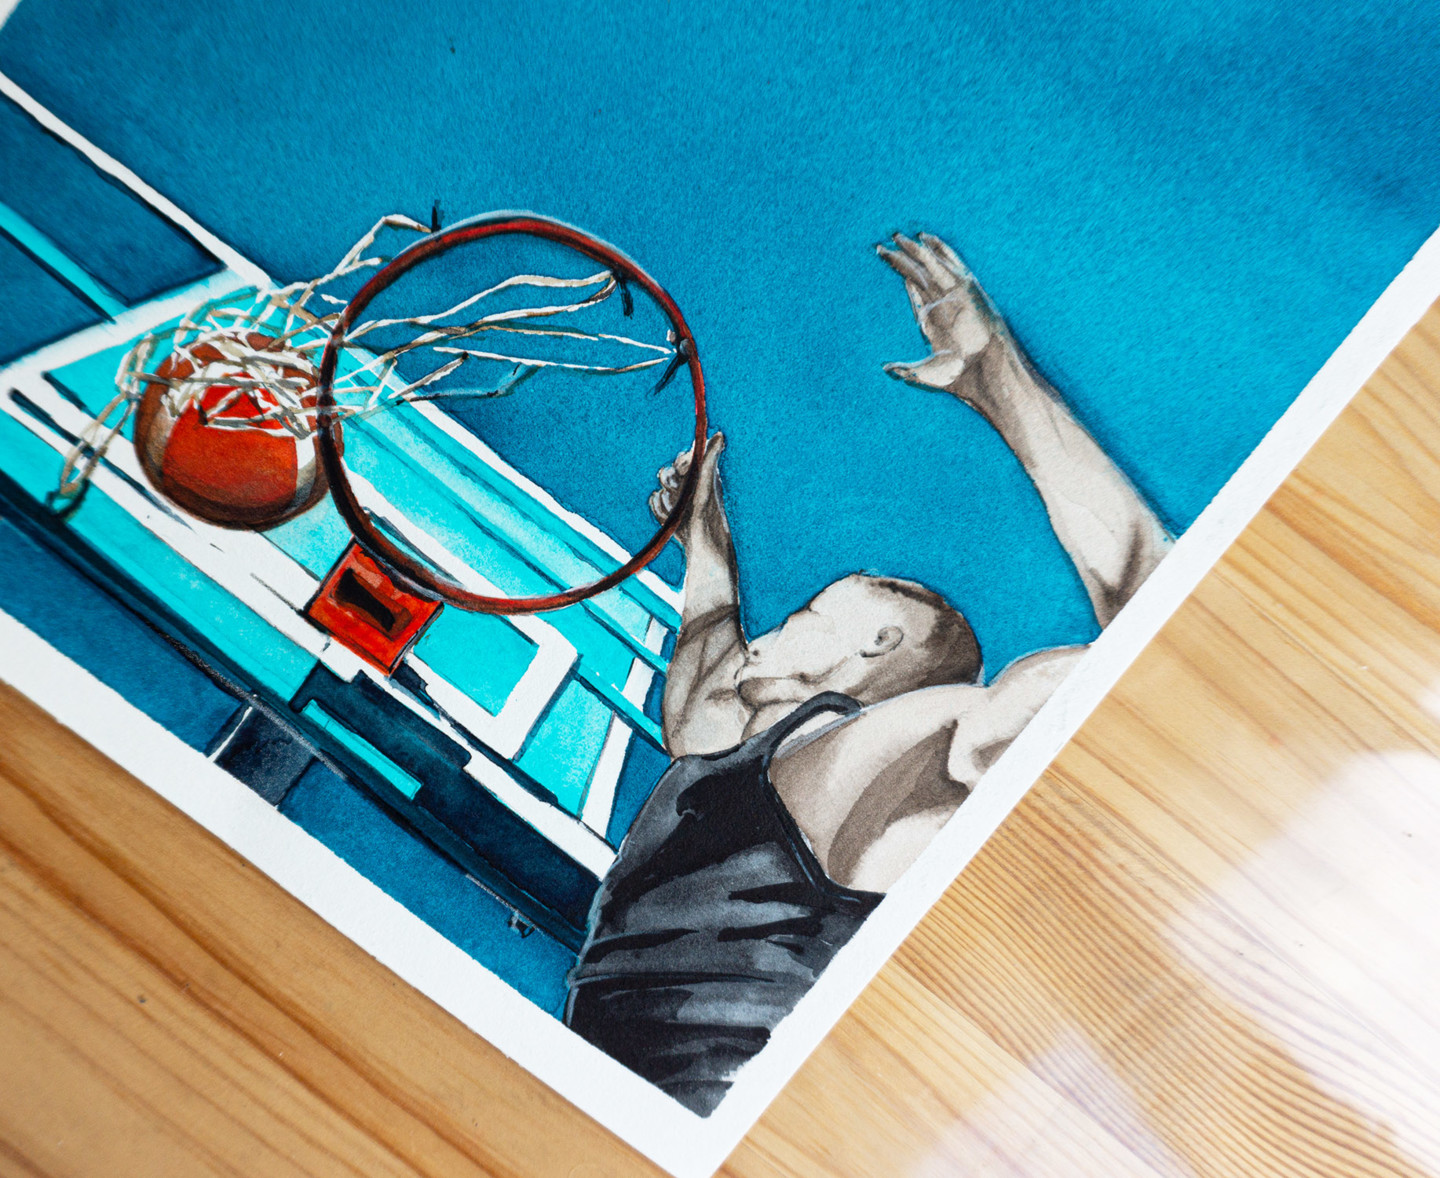 Com 2,31 m, romeno de 17 anos sonha em jogar basquete profissional na NBA -  31/01/2018 - Esporte - Folha